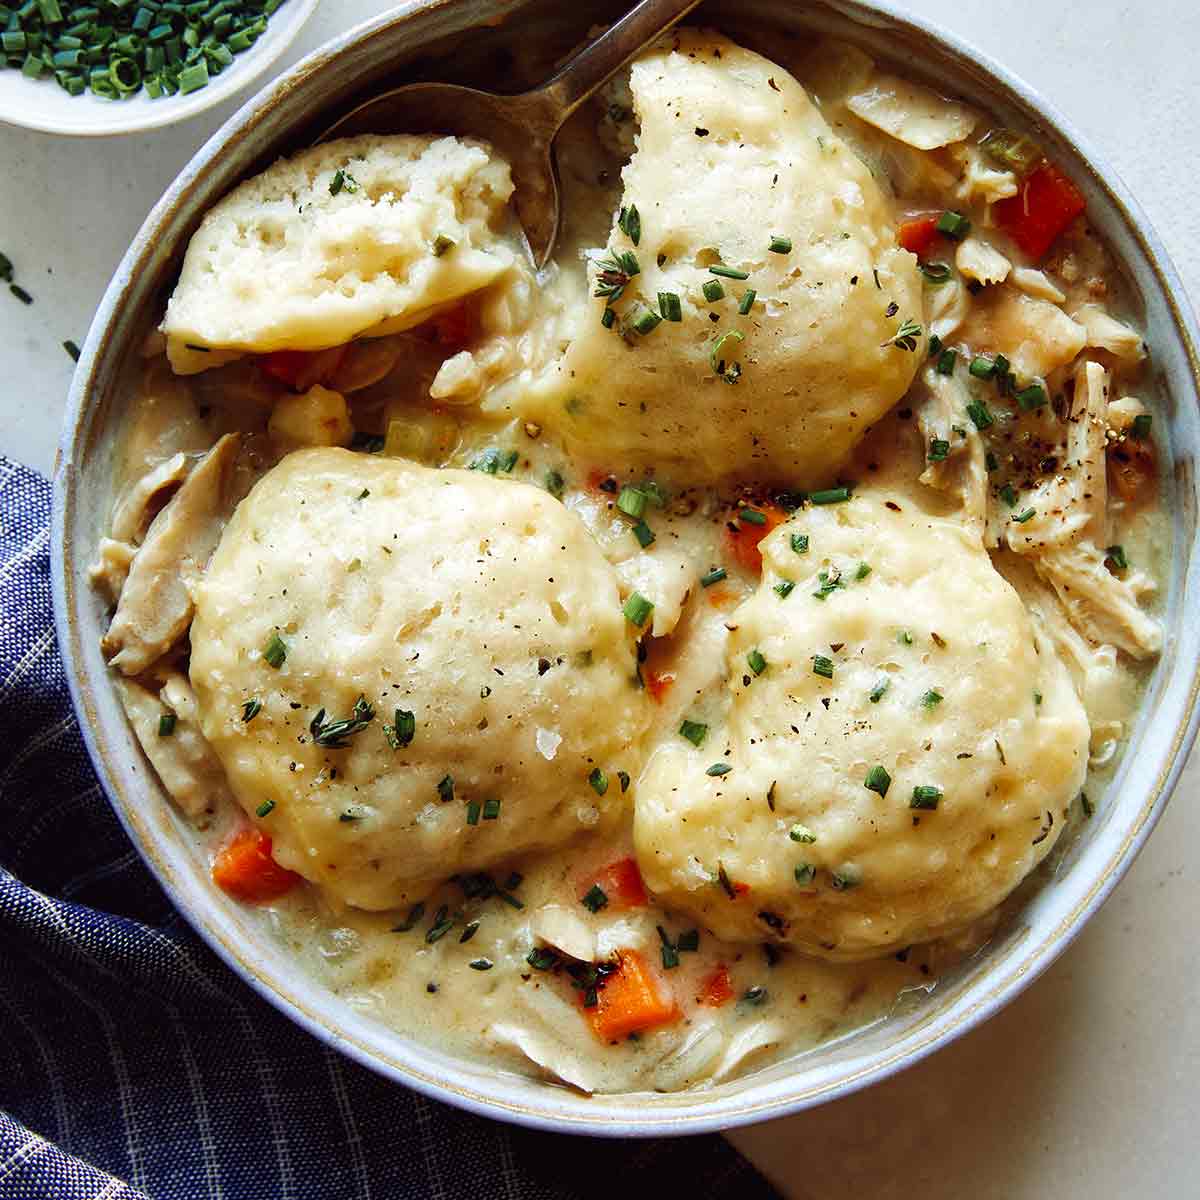 https://www.spoonforkbacon.com/wp-content/uploads/2020/12/chicken-and-dumplings-recipe-card.jpg